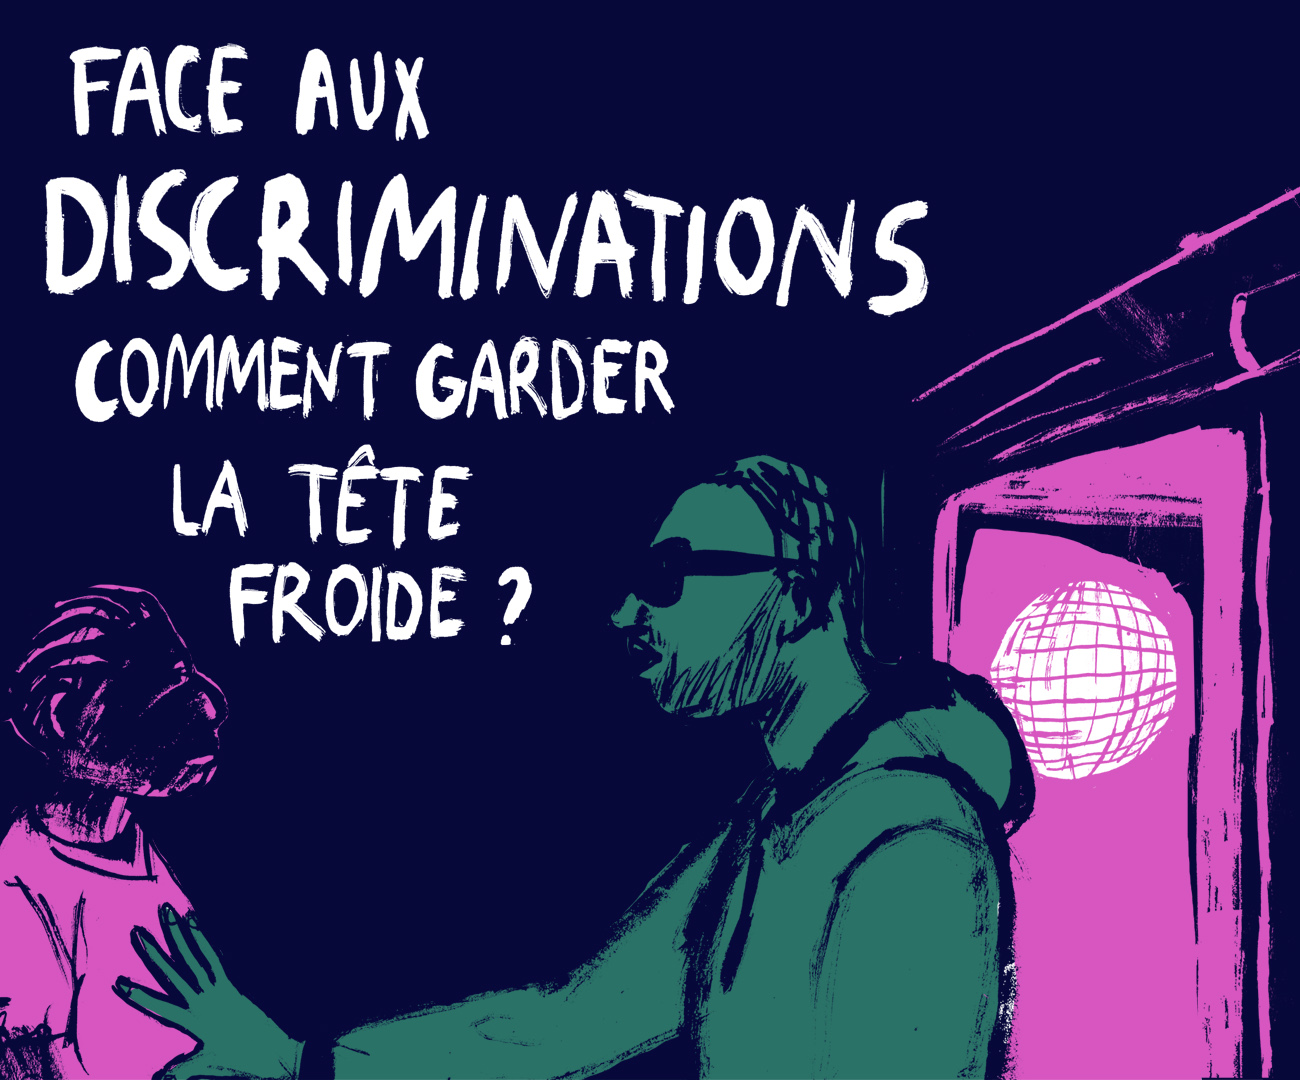 Face aux discriminations : comment garder la tête froide ? © Benoît Guillaume